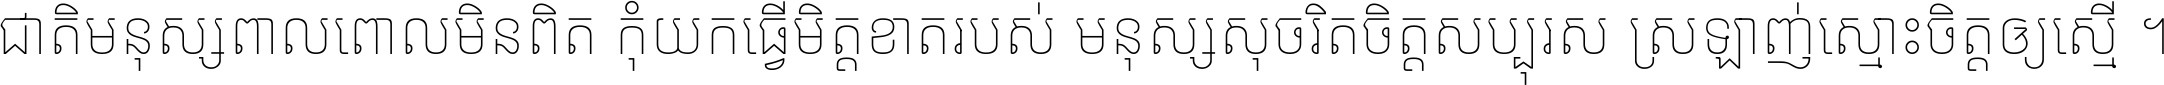 Noto Sans Khmer Thin